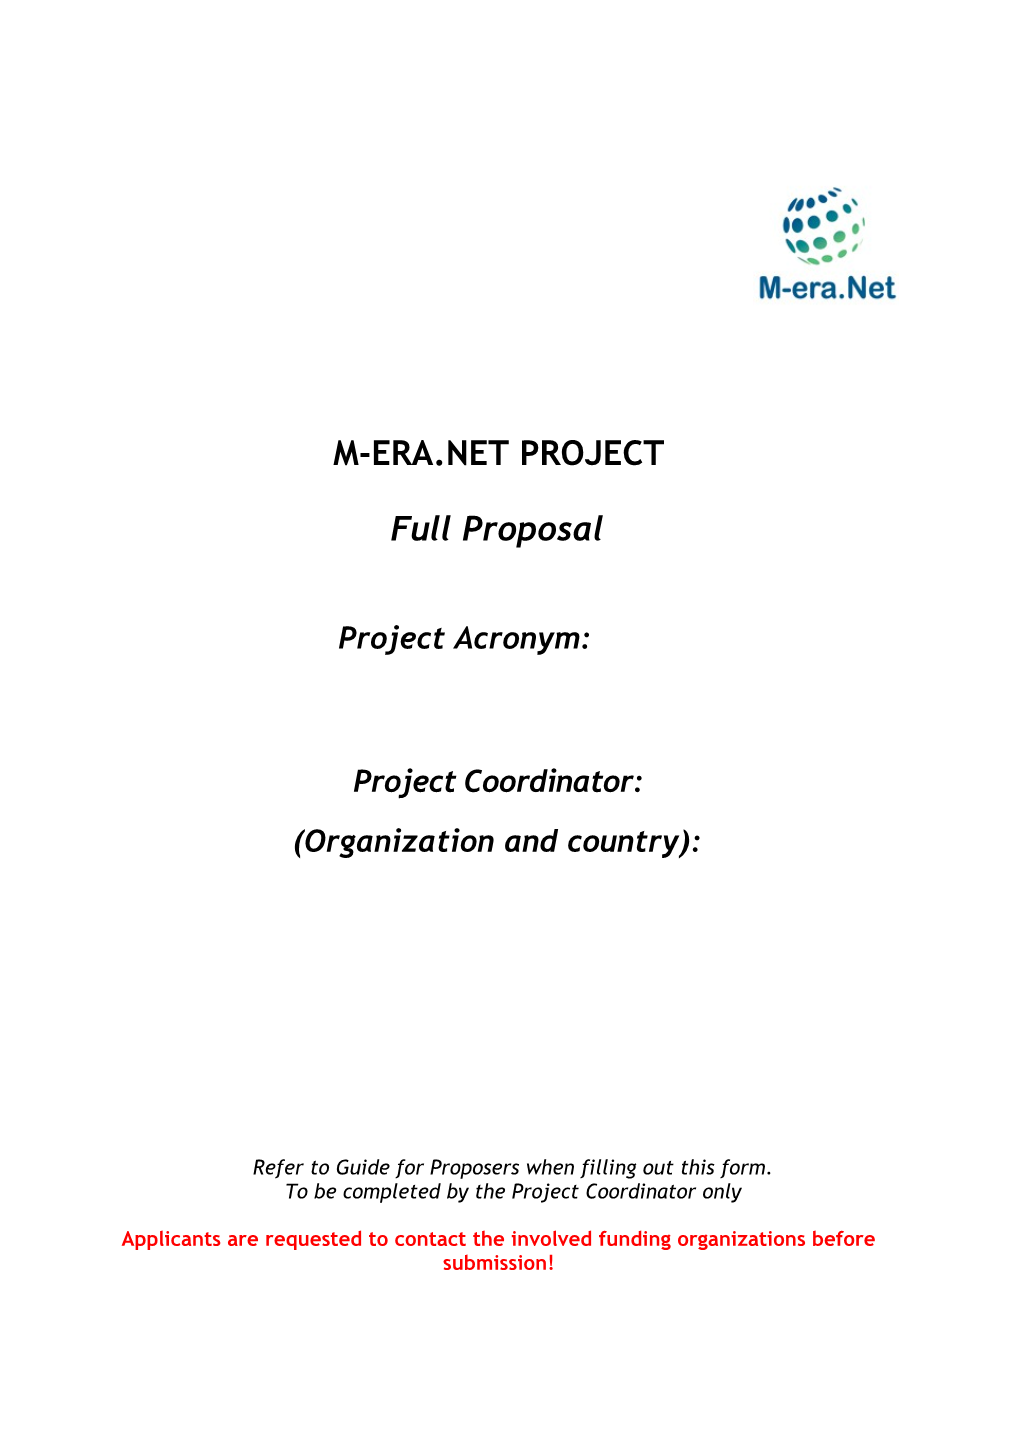 M-Era.Net Project